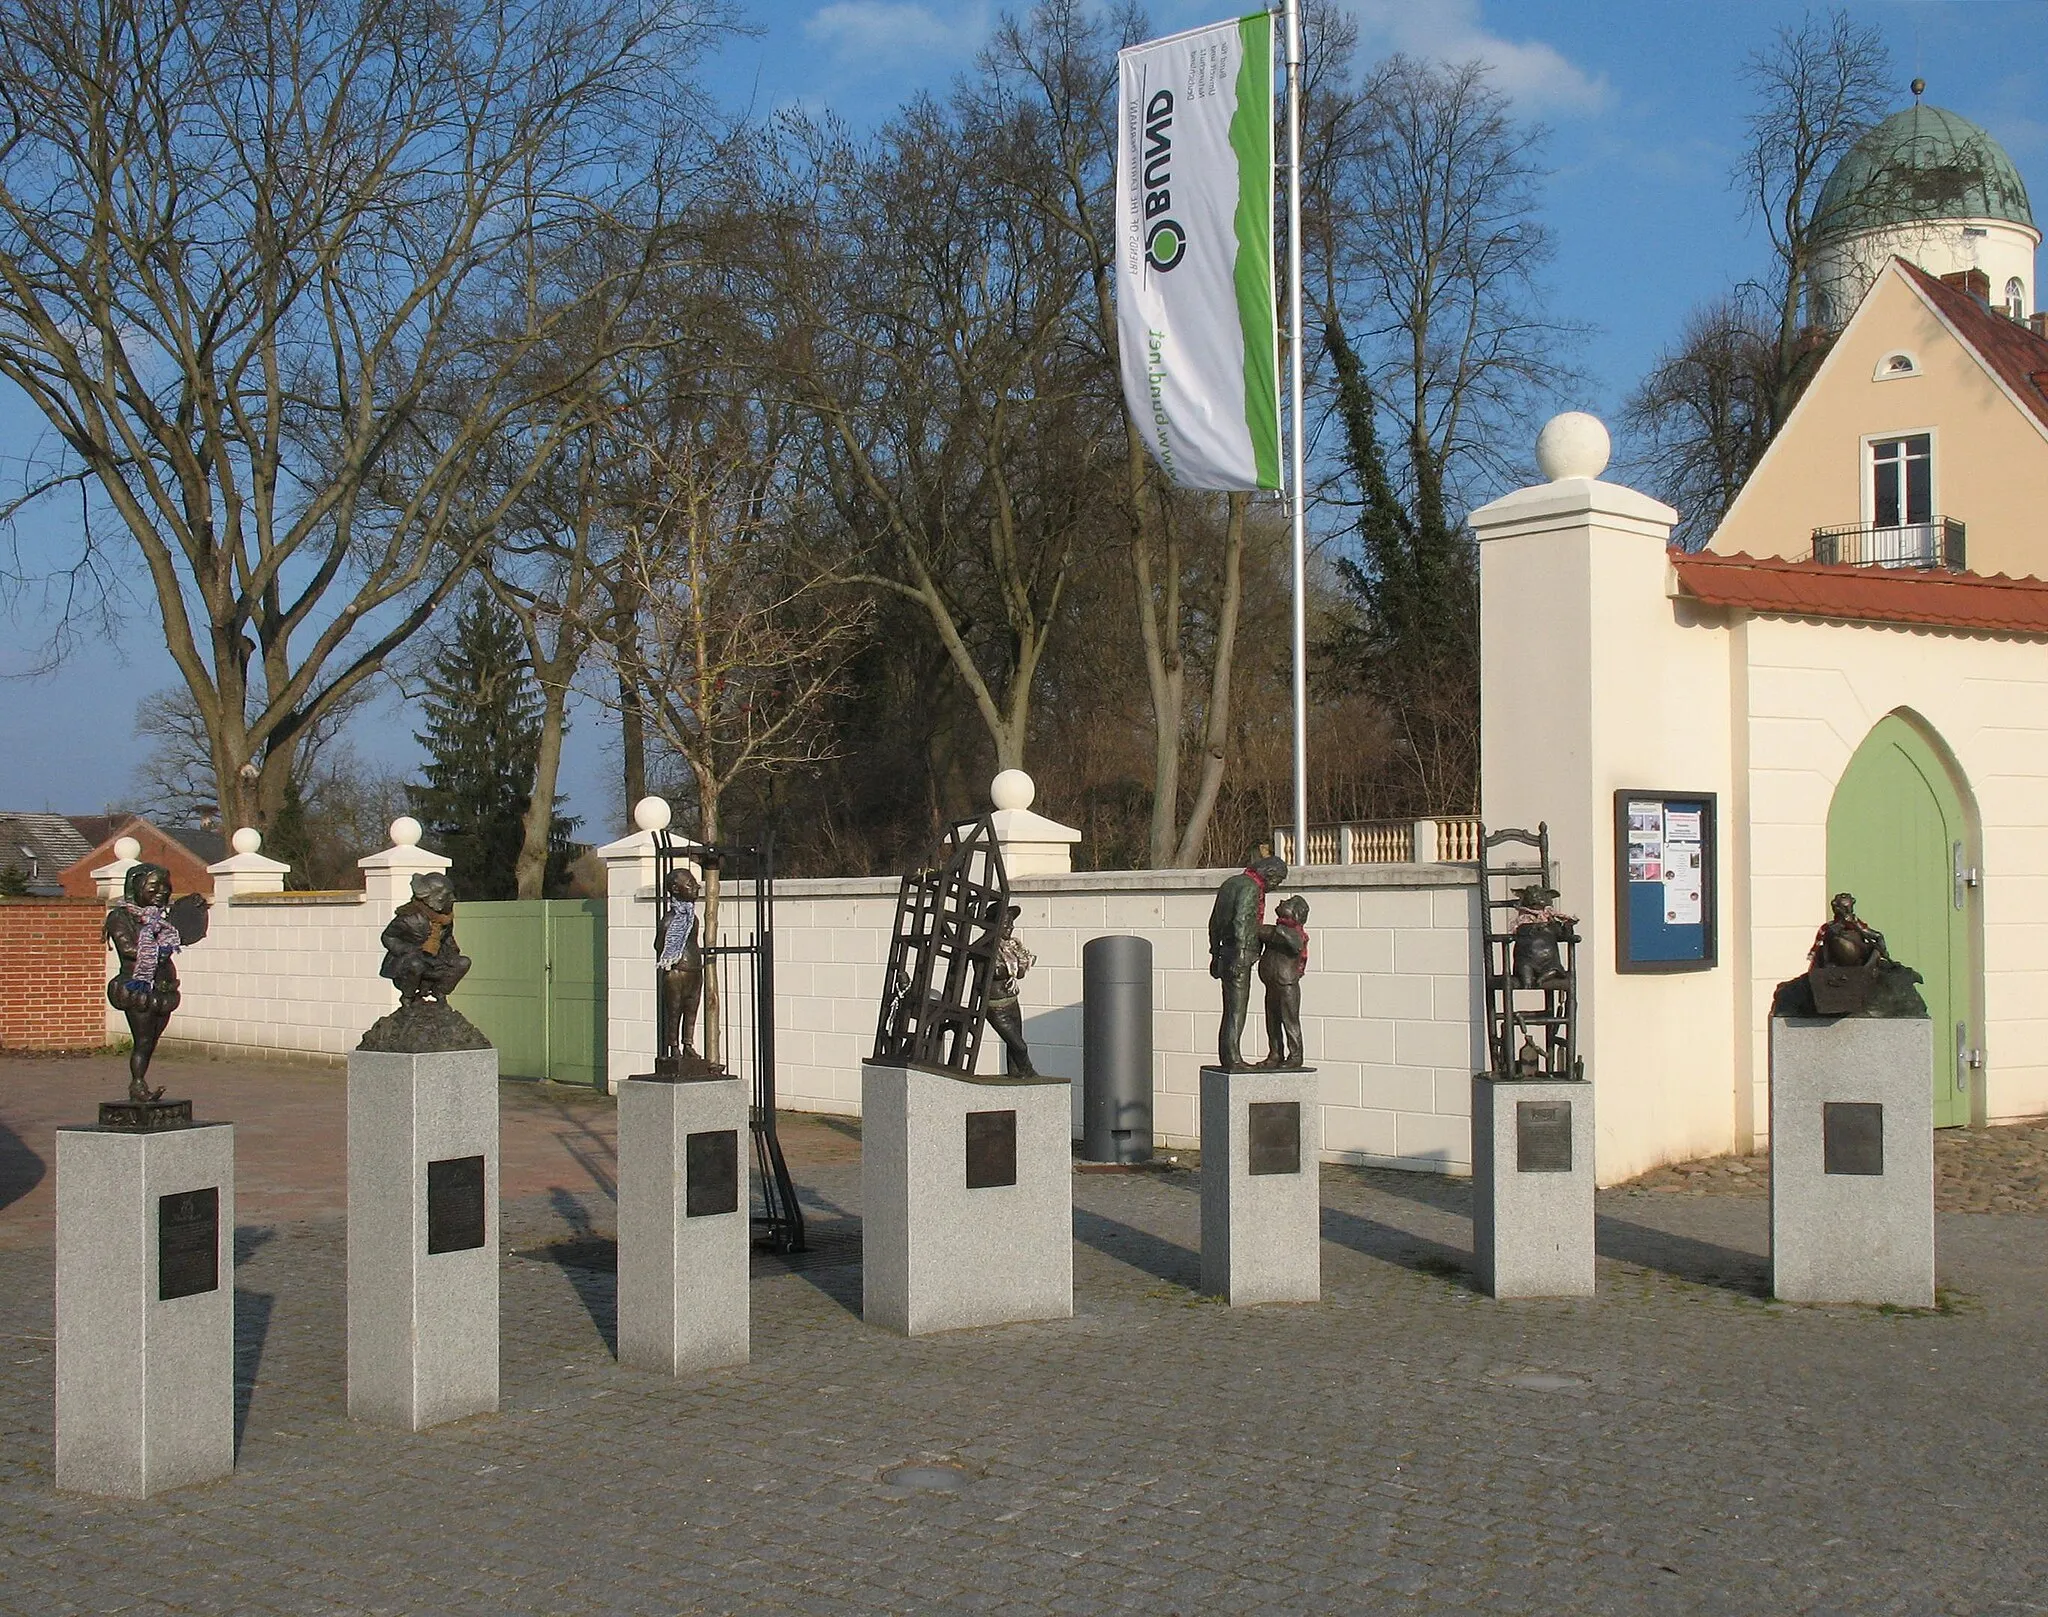 Photo showing: Sculptures "Jester's licence" by Bernd Streiter in Lenzen in Brandenburg, Germany